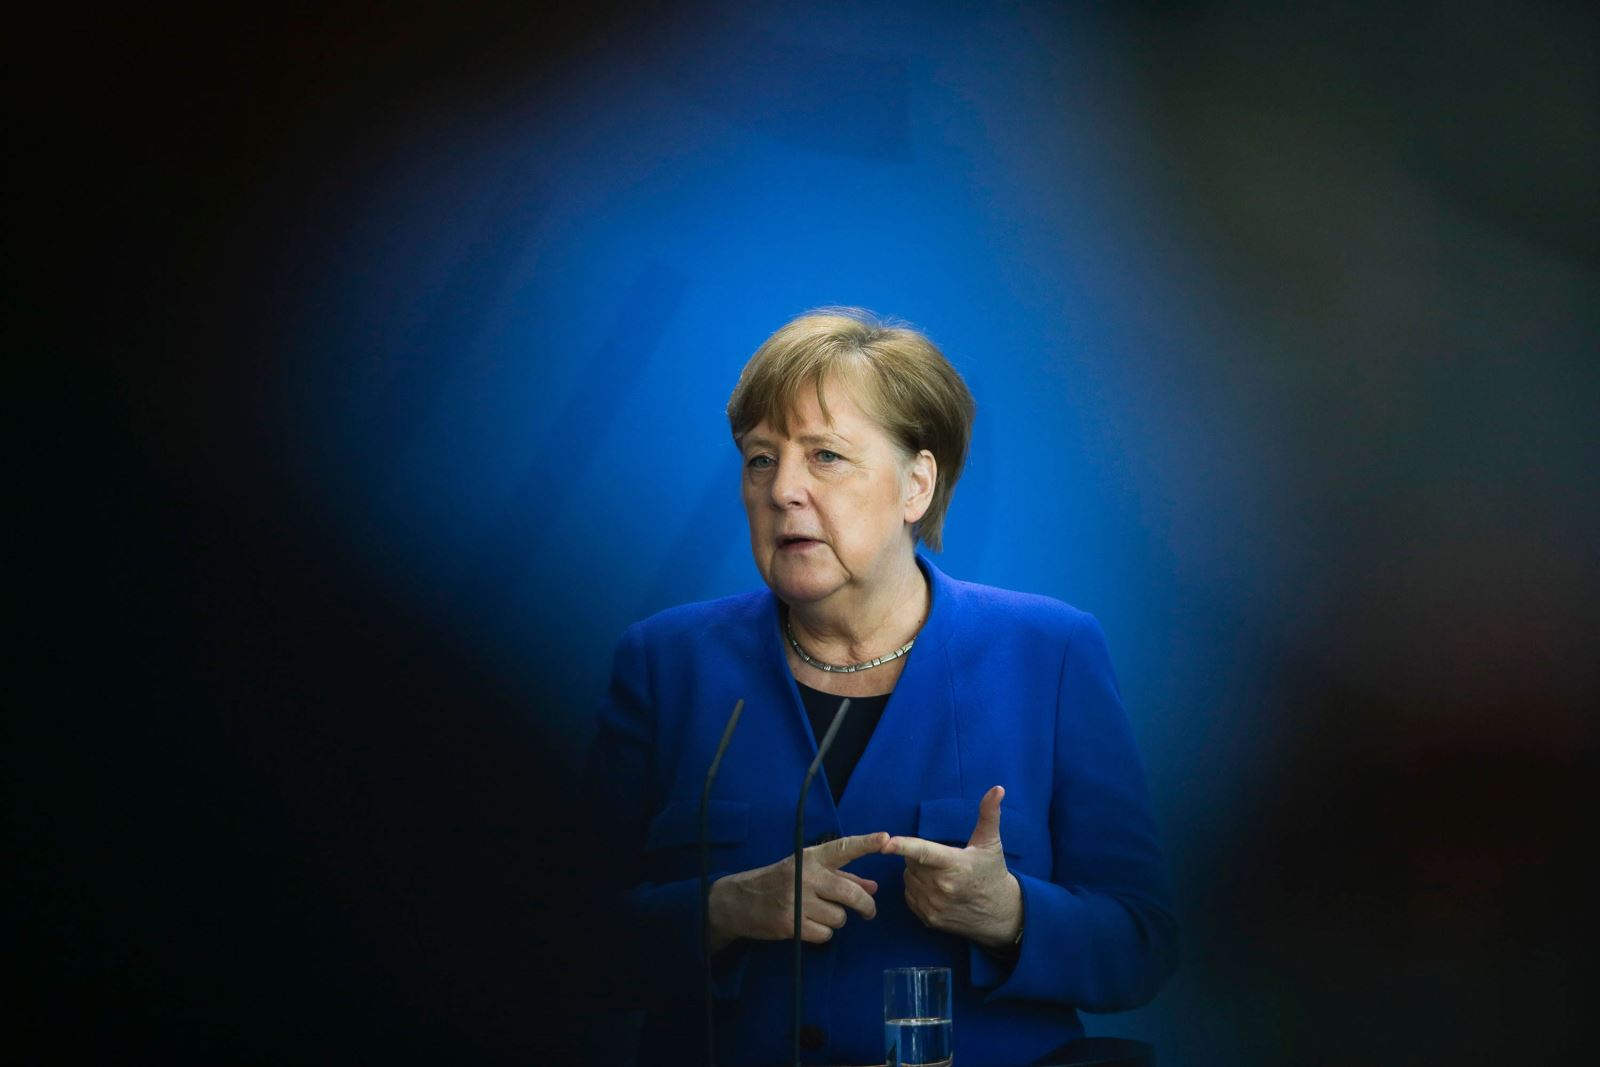 Thủ tướng Merkel trong cuộc họp báo ngày 20/4 tại Berlin. Ảnh: AFP/Getty Images